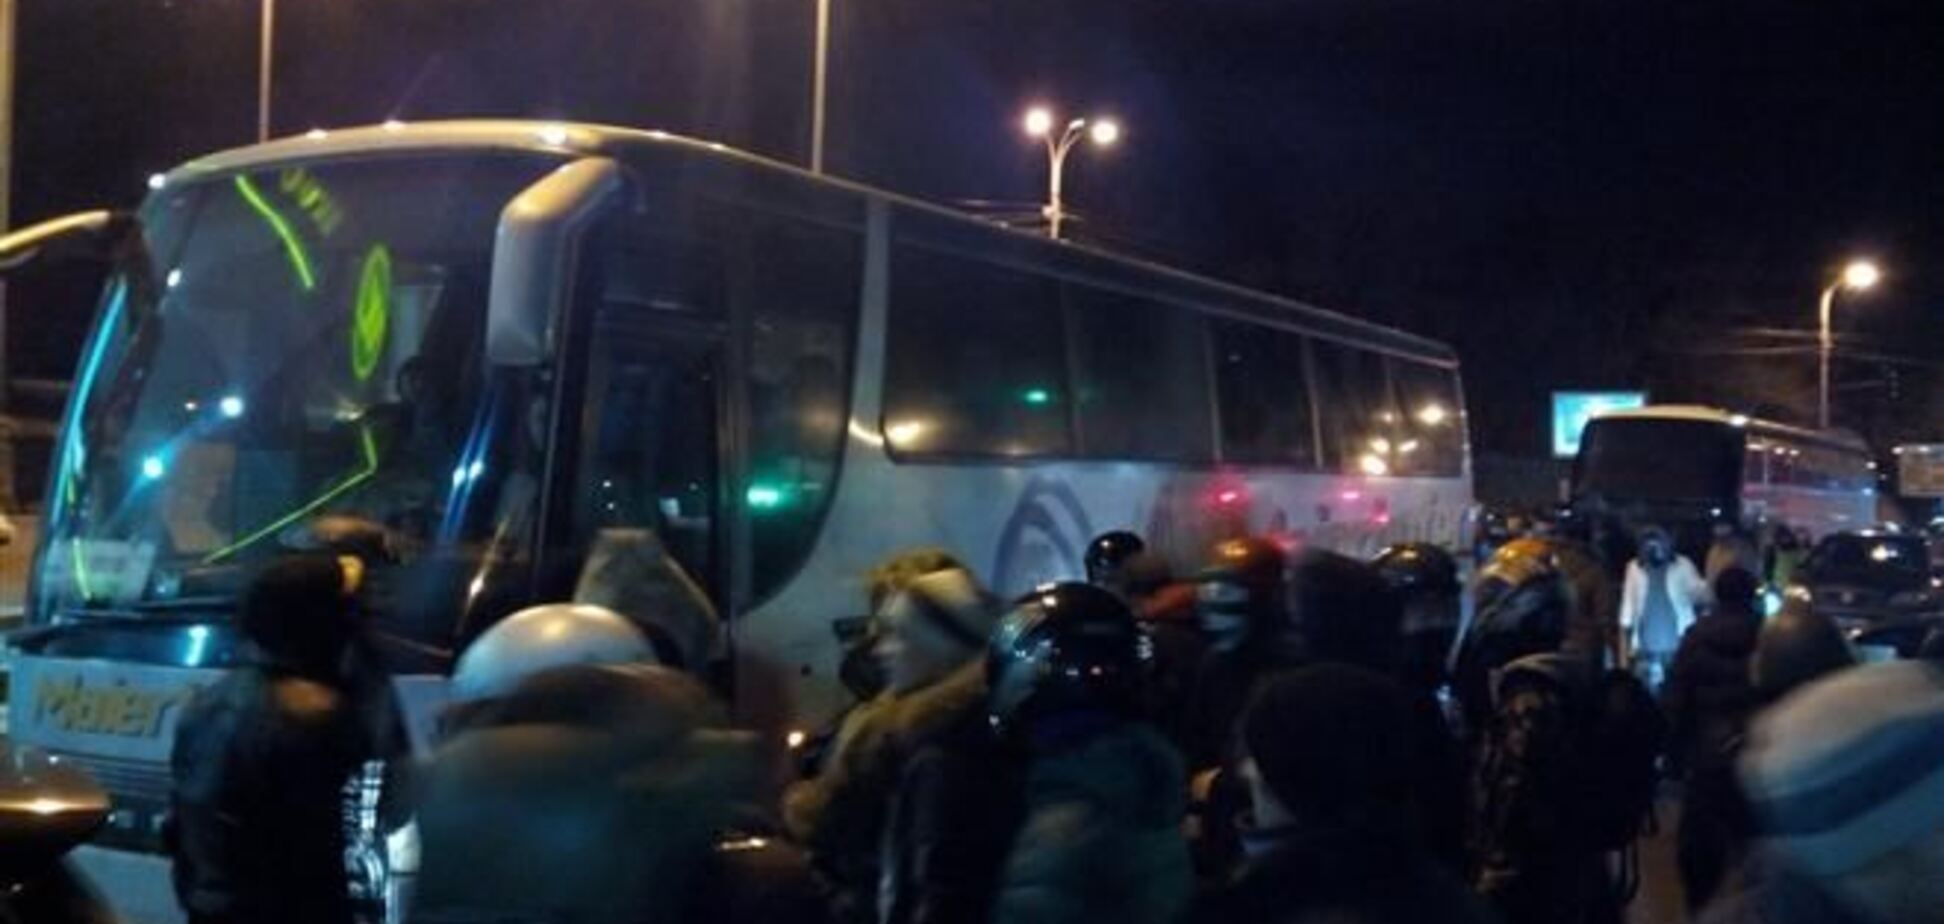 Активісти заблокували автобуси з 'тітушкамі'